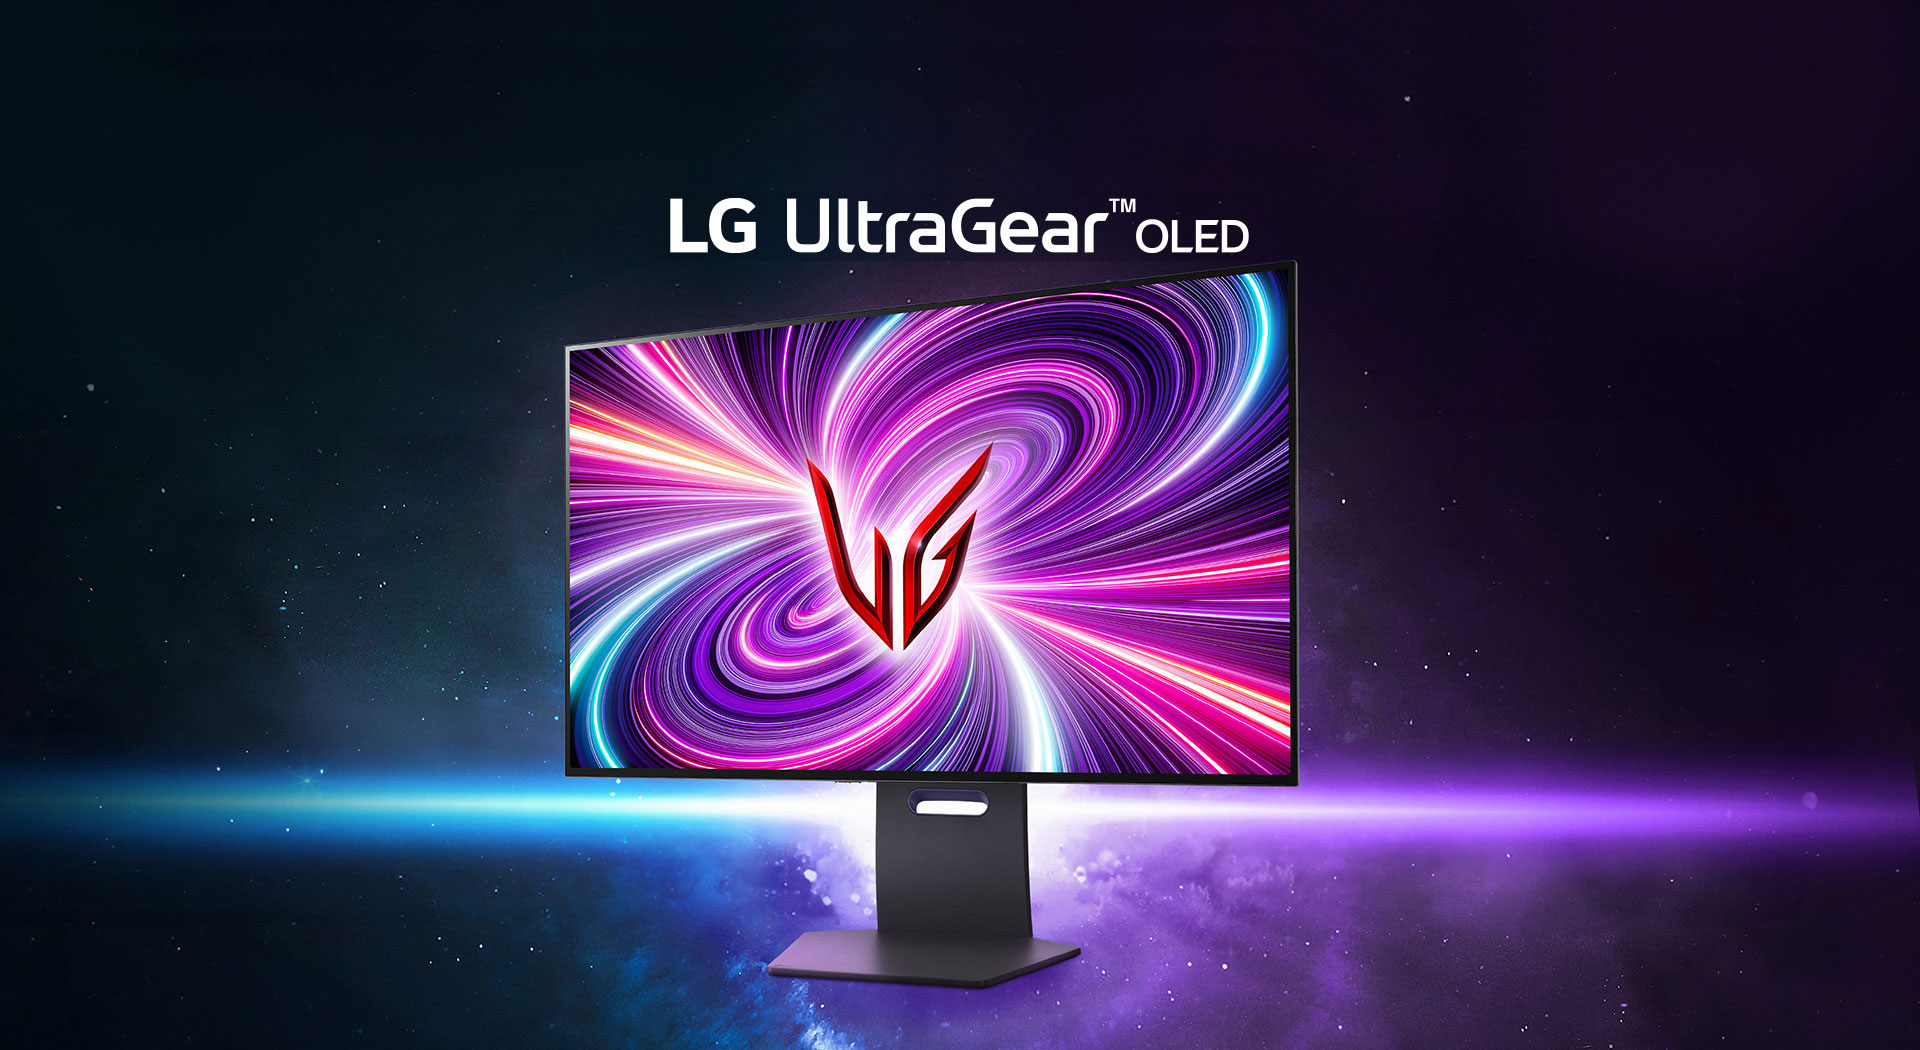 Les nouveaux écrans gaming LG UltraGear sont disponibles. Quoi de neuf pour les joueurs ?